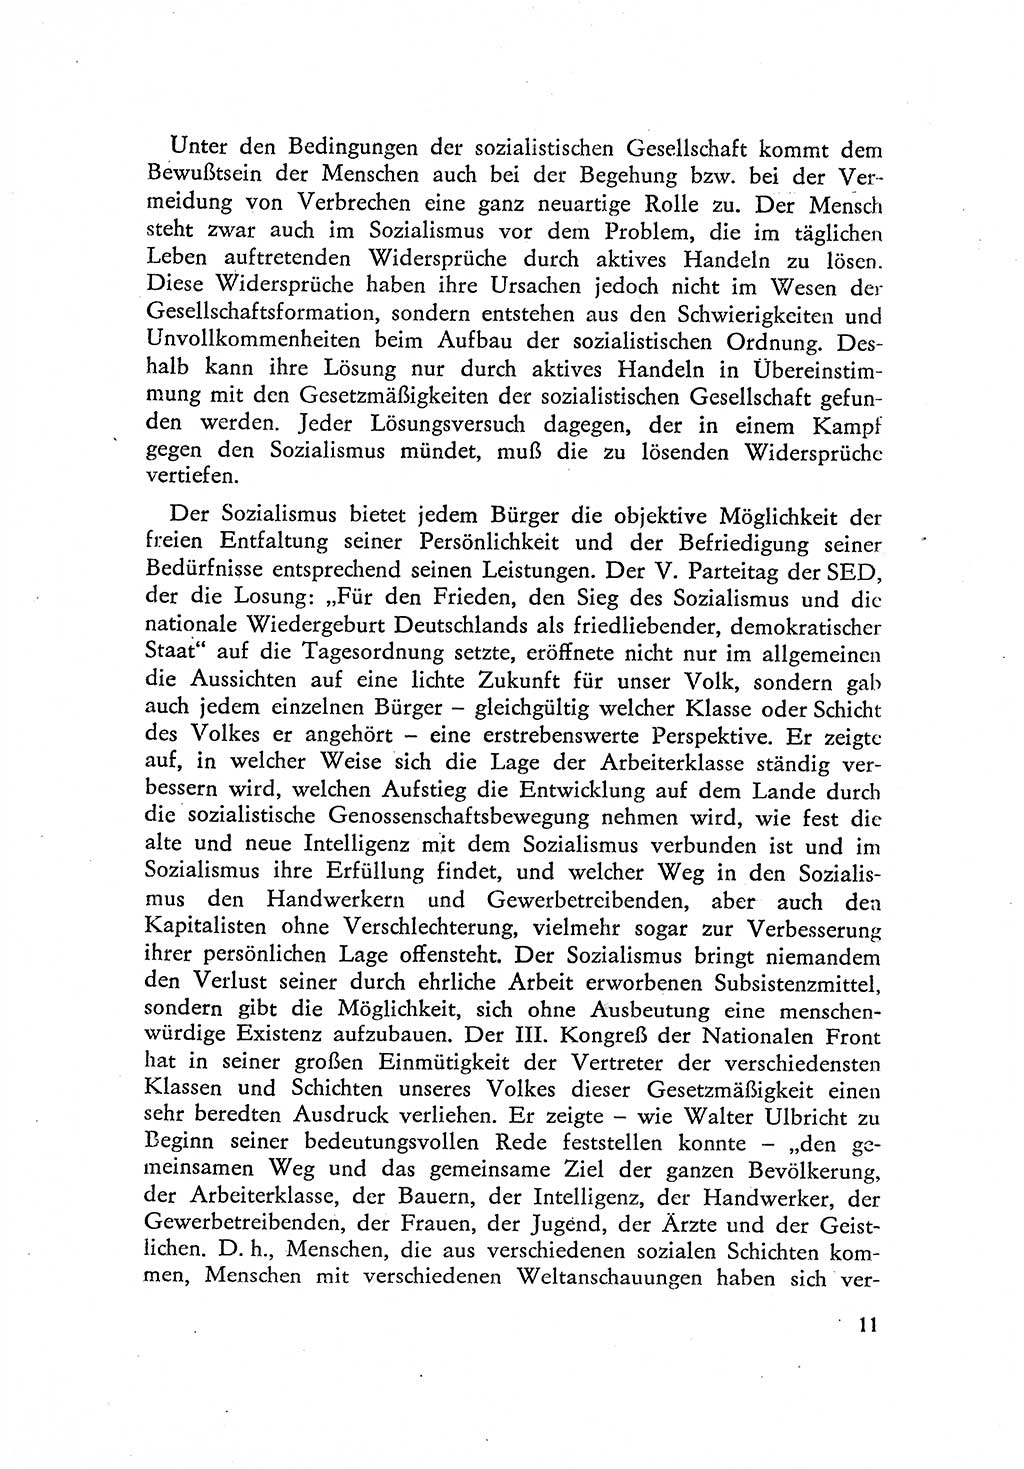 Beiträge zum Strafrecht [Deutsche Demokratische Republik (DDR)] 1959, Seite 11 (Beitr. Strafr. DDR 1959, S. 11)